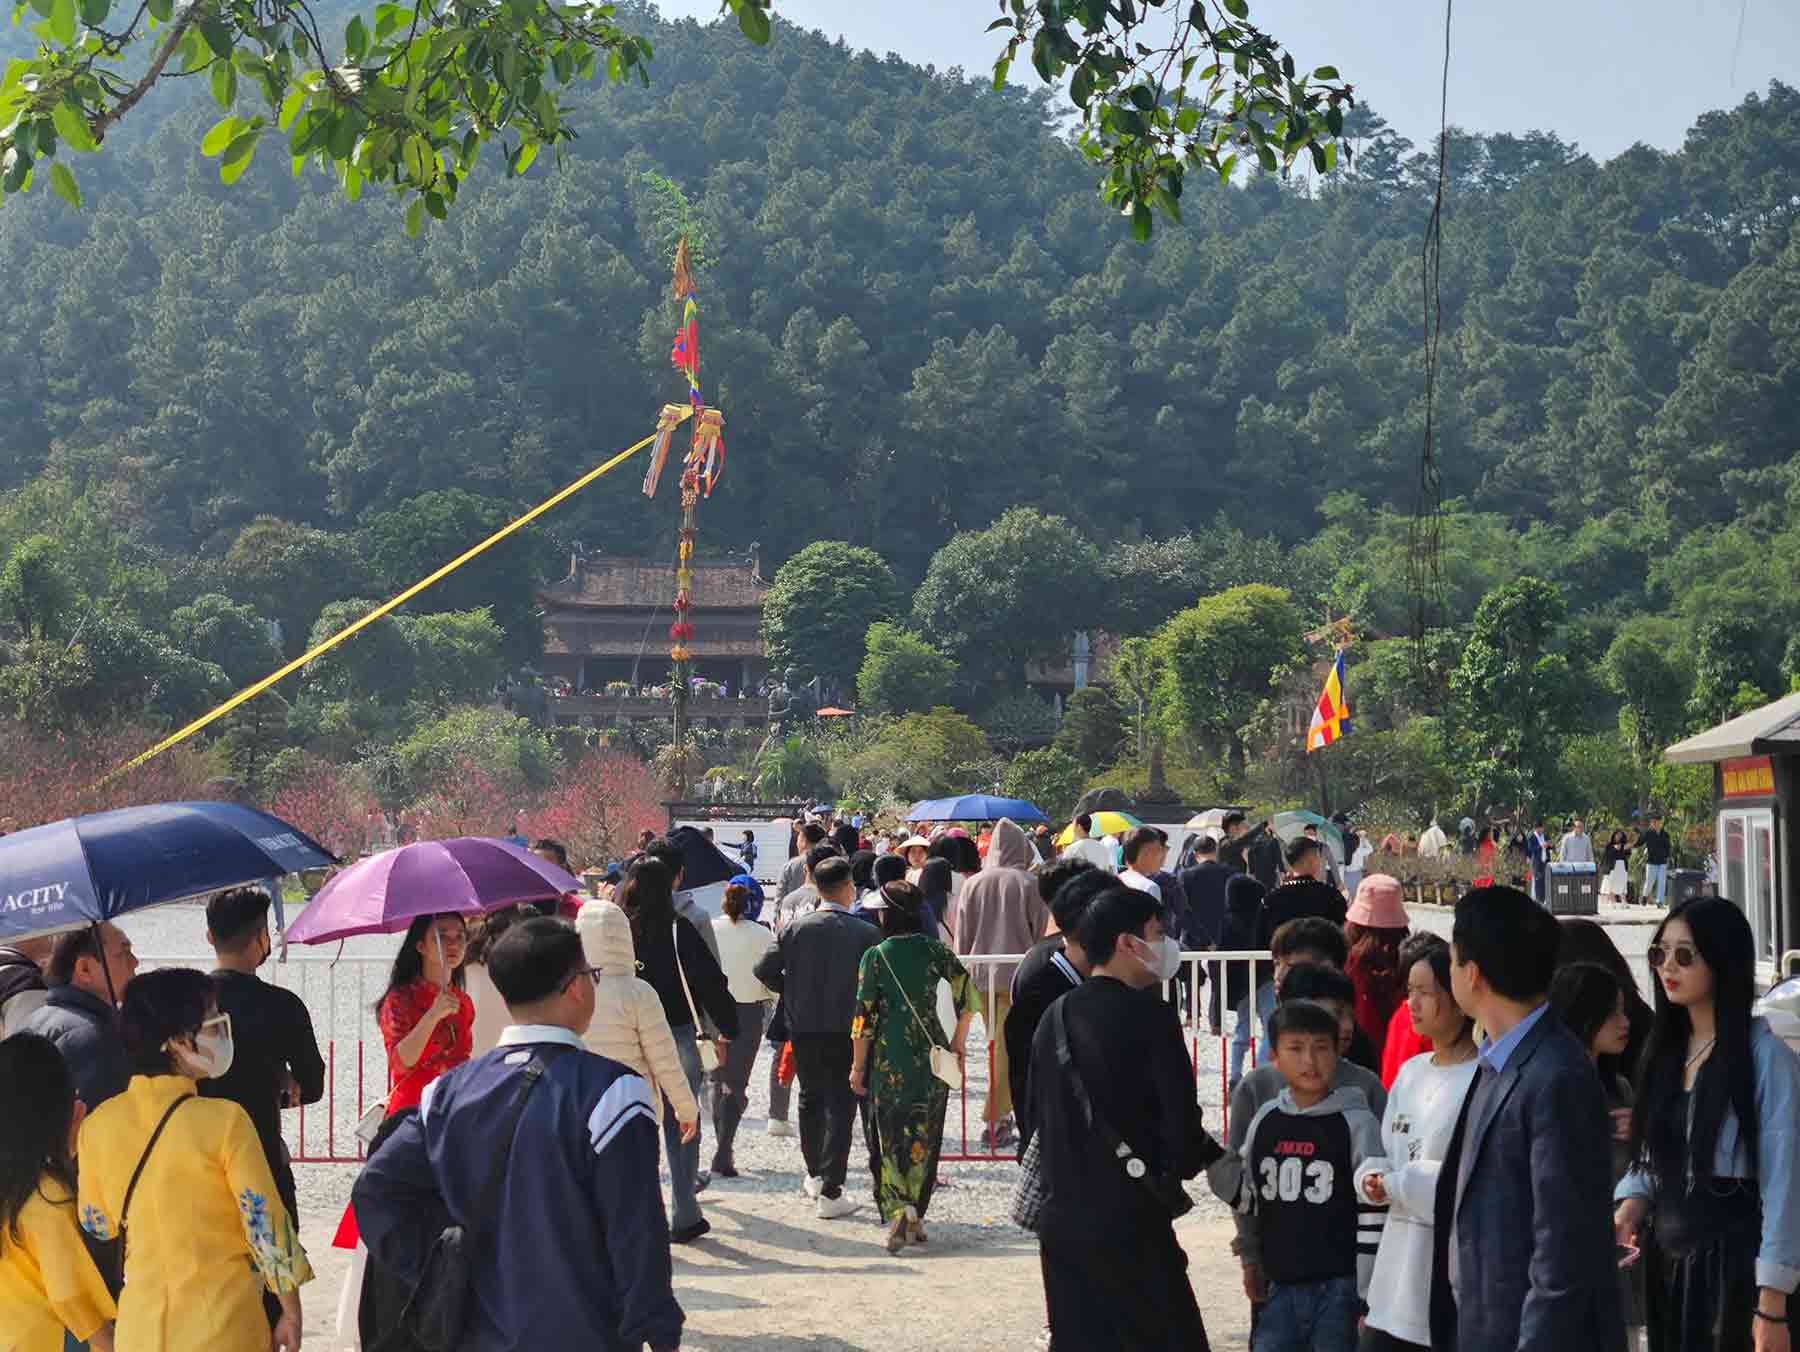 Tương tự tại Đại tạng phi lai tự (Hà Nam), lượng khách thập phương đổ về đây rất lớn. Theo người dân chia sẻ, du khách đến chùa tham quan bắt đầu đông đúc từ chiều ngày Mùng 1 Tết Âm lịch. 